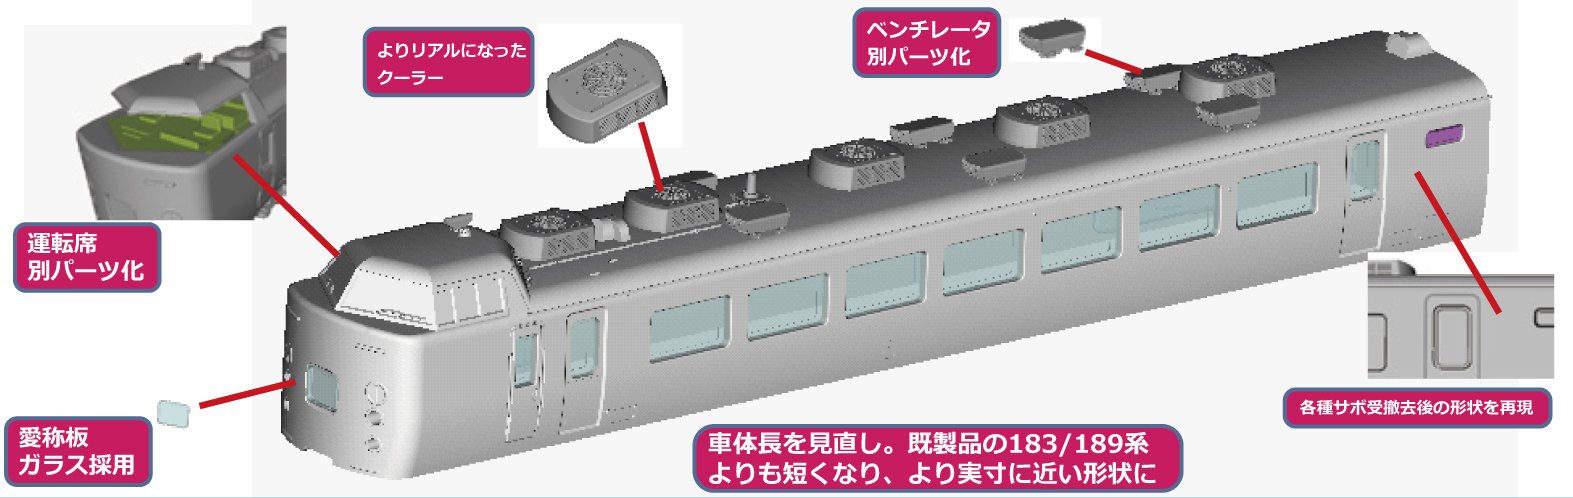 Kato N Gauge 189 Series Asama 5-Car Basic Set 10-1434 Modèle de train ferroviaire